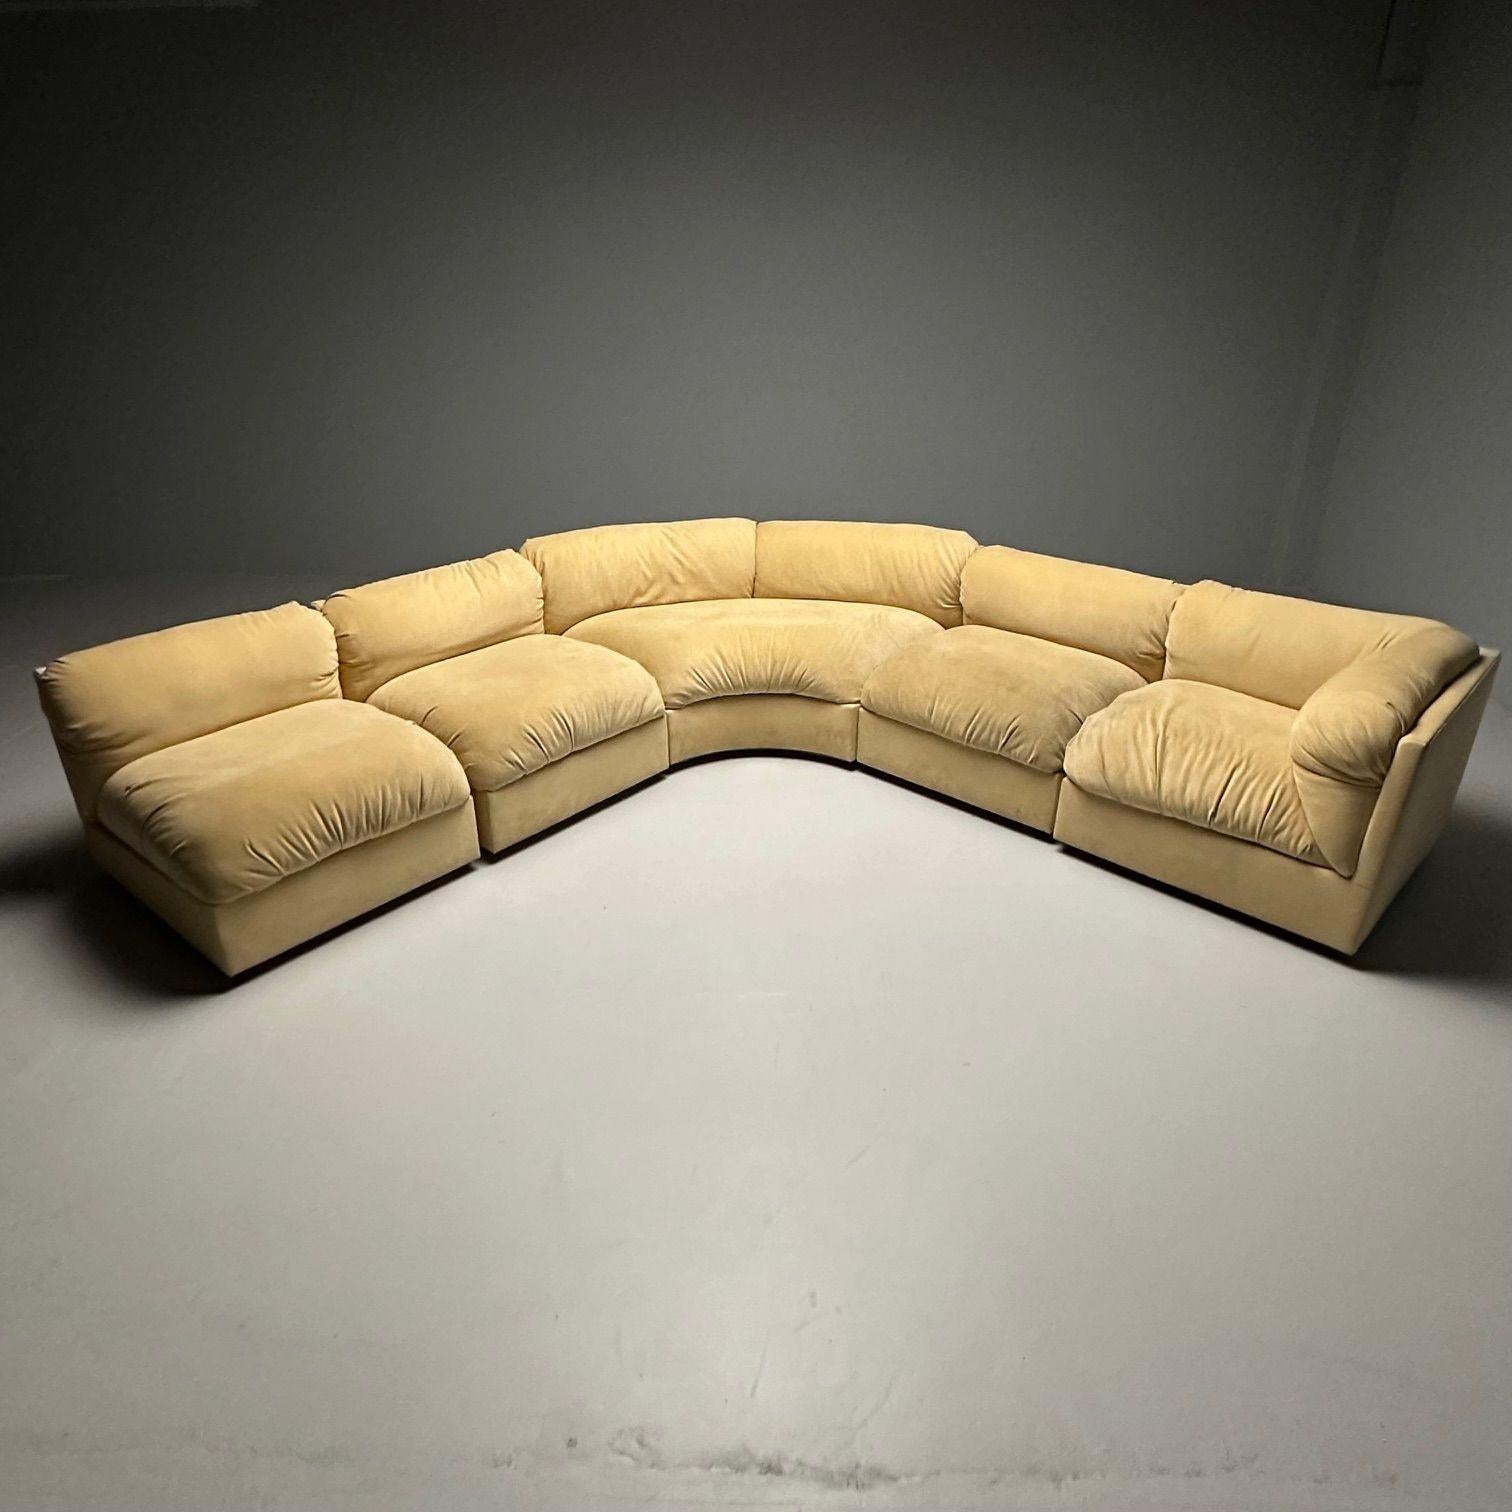 Erwin-Lambeth, mi-siècle moderne, grand canapé sectionnel modulaire, retapissé en vente 2